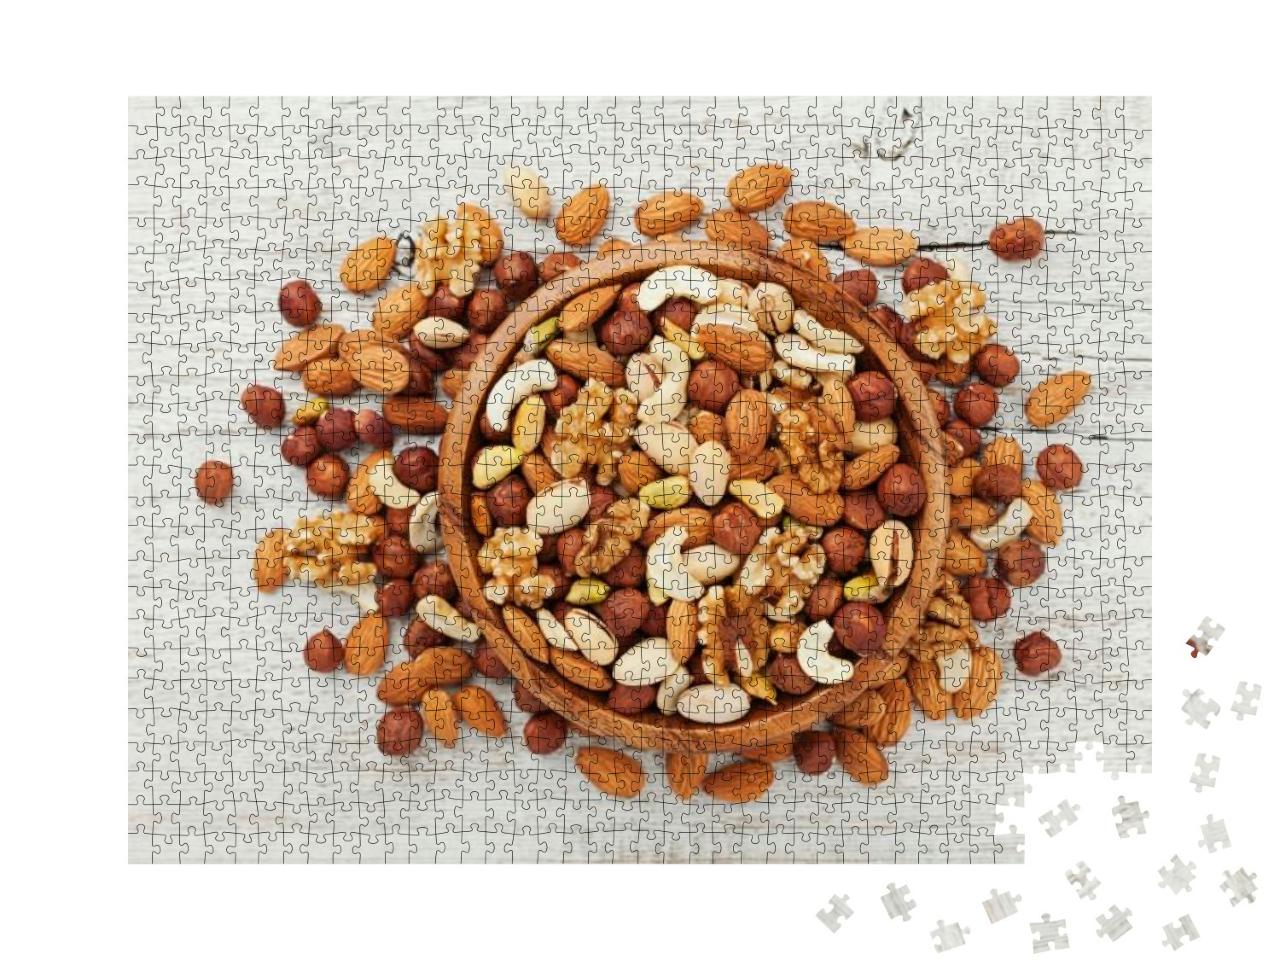 Puzzle 1000 Teile „Gesunder Snack: Holzschale mit gemischten Nüssen“